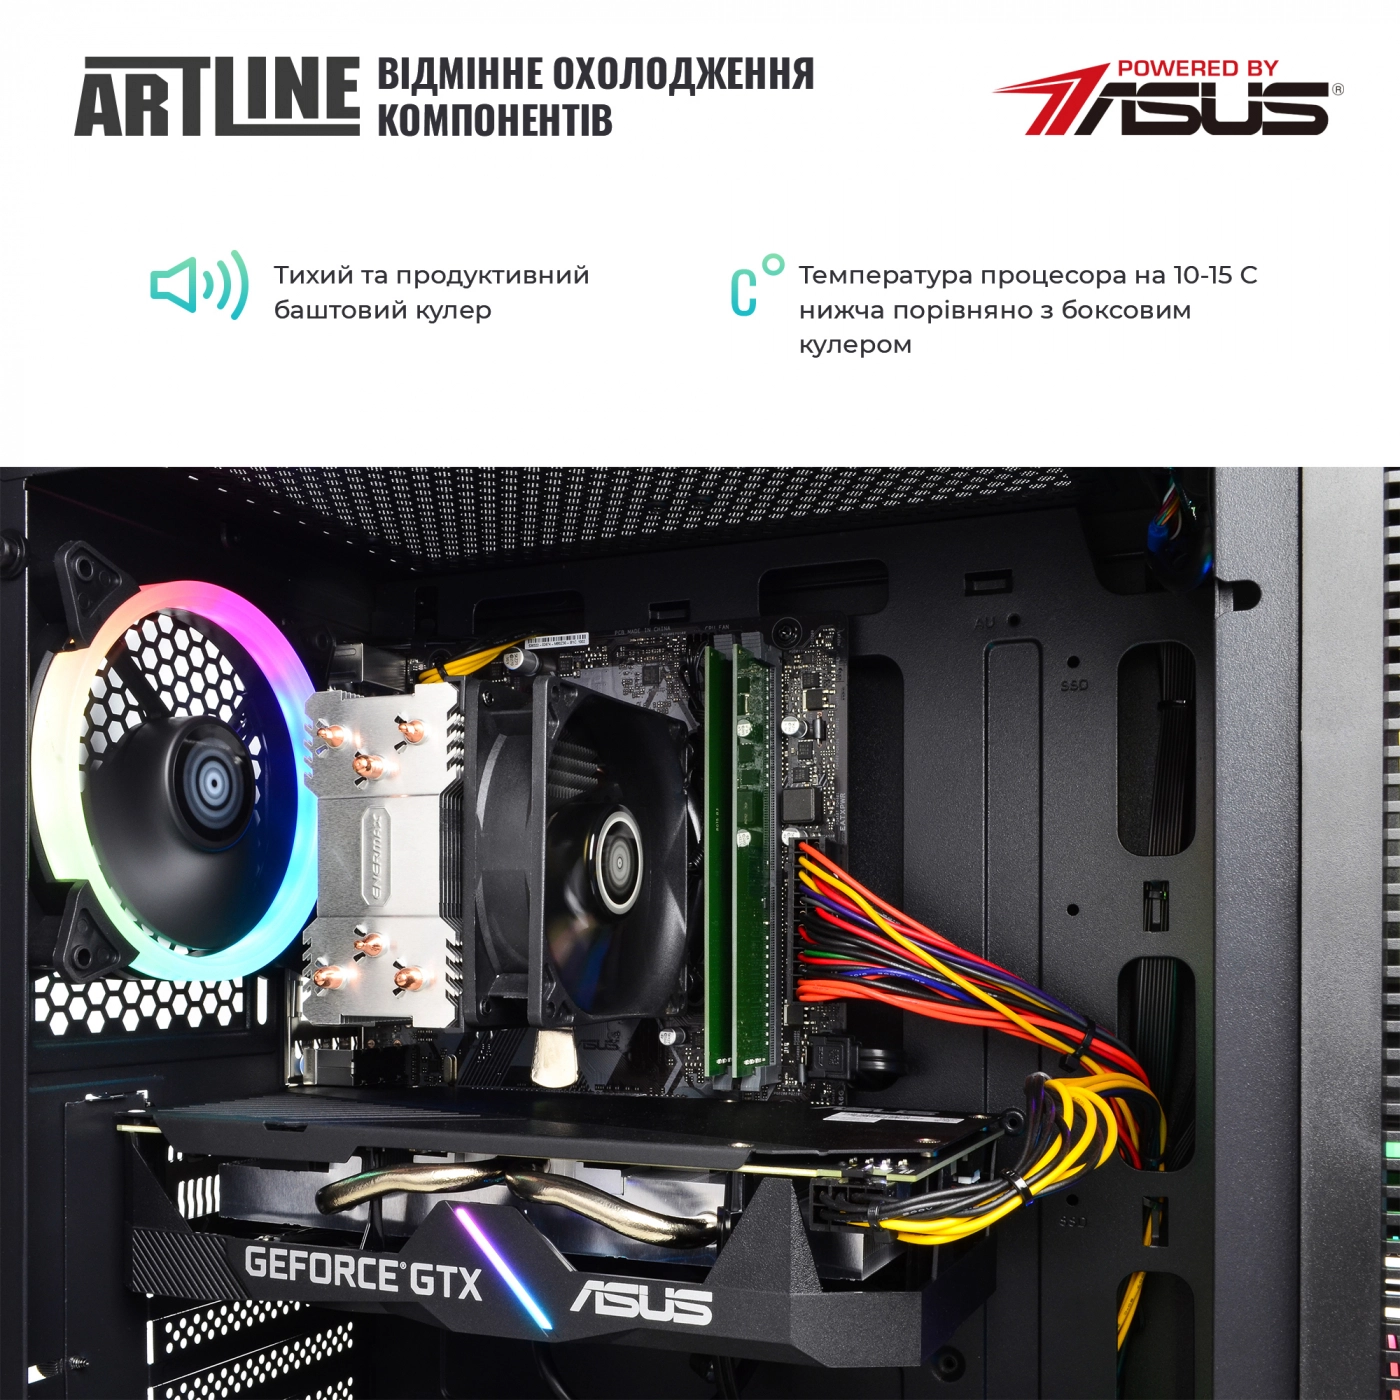 Купить Компьютер ARTLINE Gaming X53v22 - фото 3